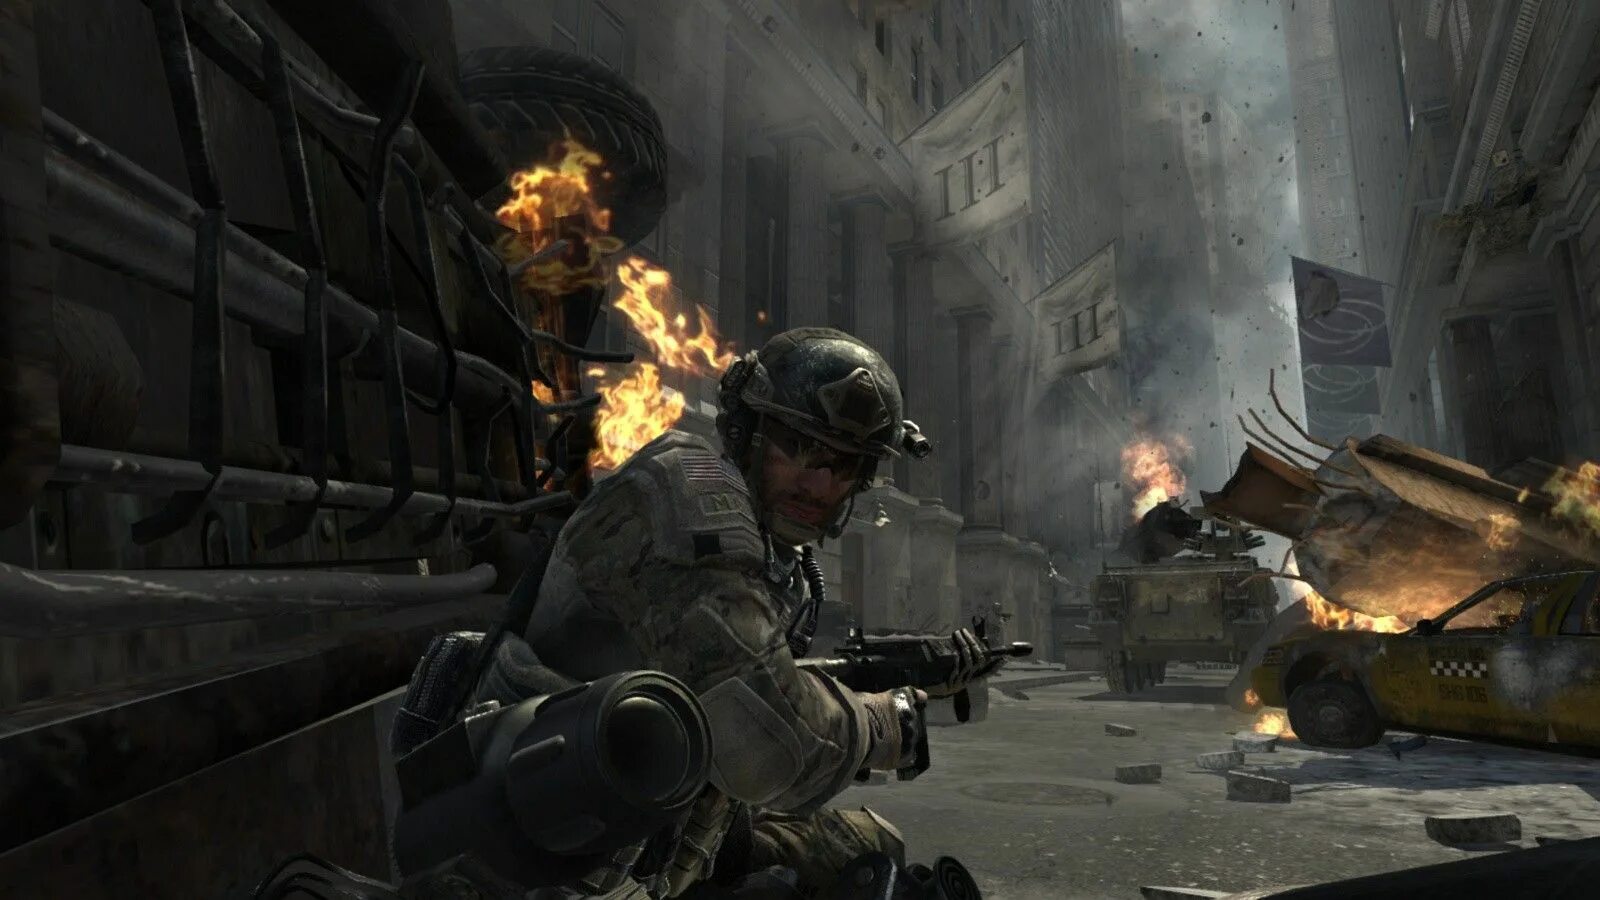 Call of Duty: Modern Warfare 3. Call of Duty 4 Modern Warfare 3. Call of Duty Warfare 3. Call of Duty: Modern Warfare 3 Оазис. Модерн варфаер 3 бесплатная версия